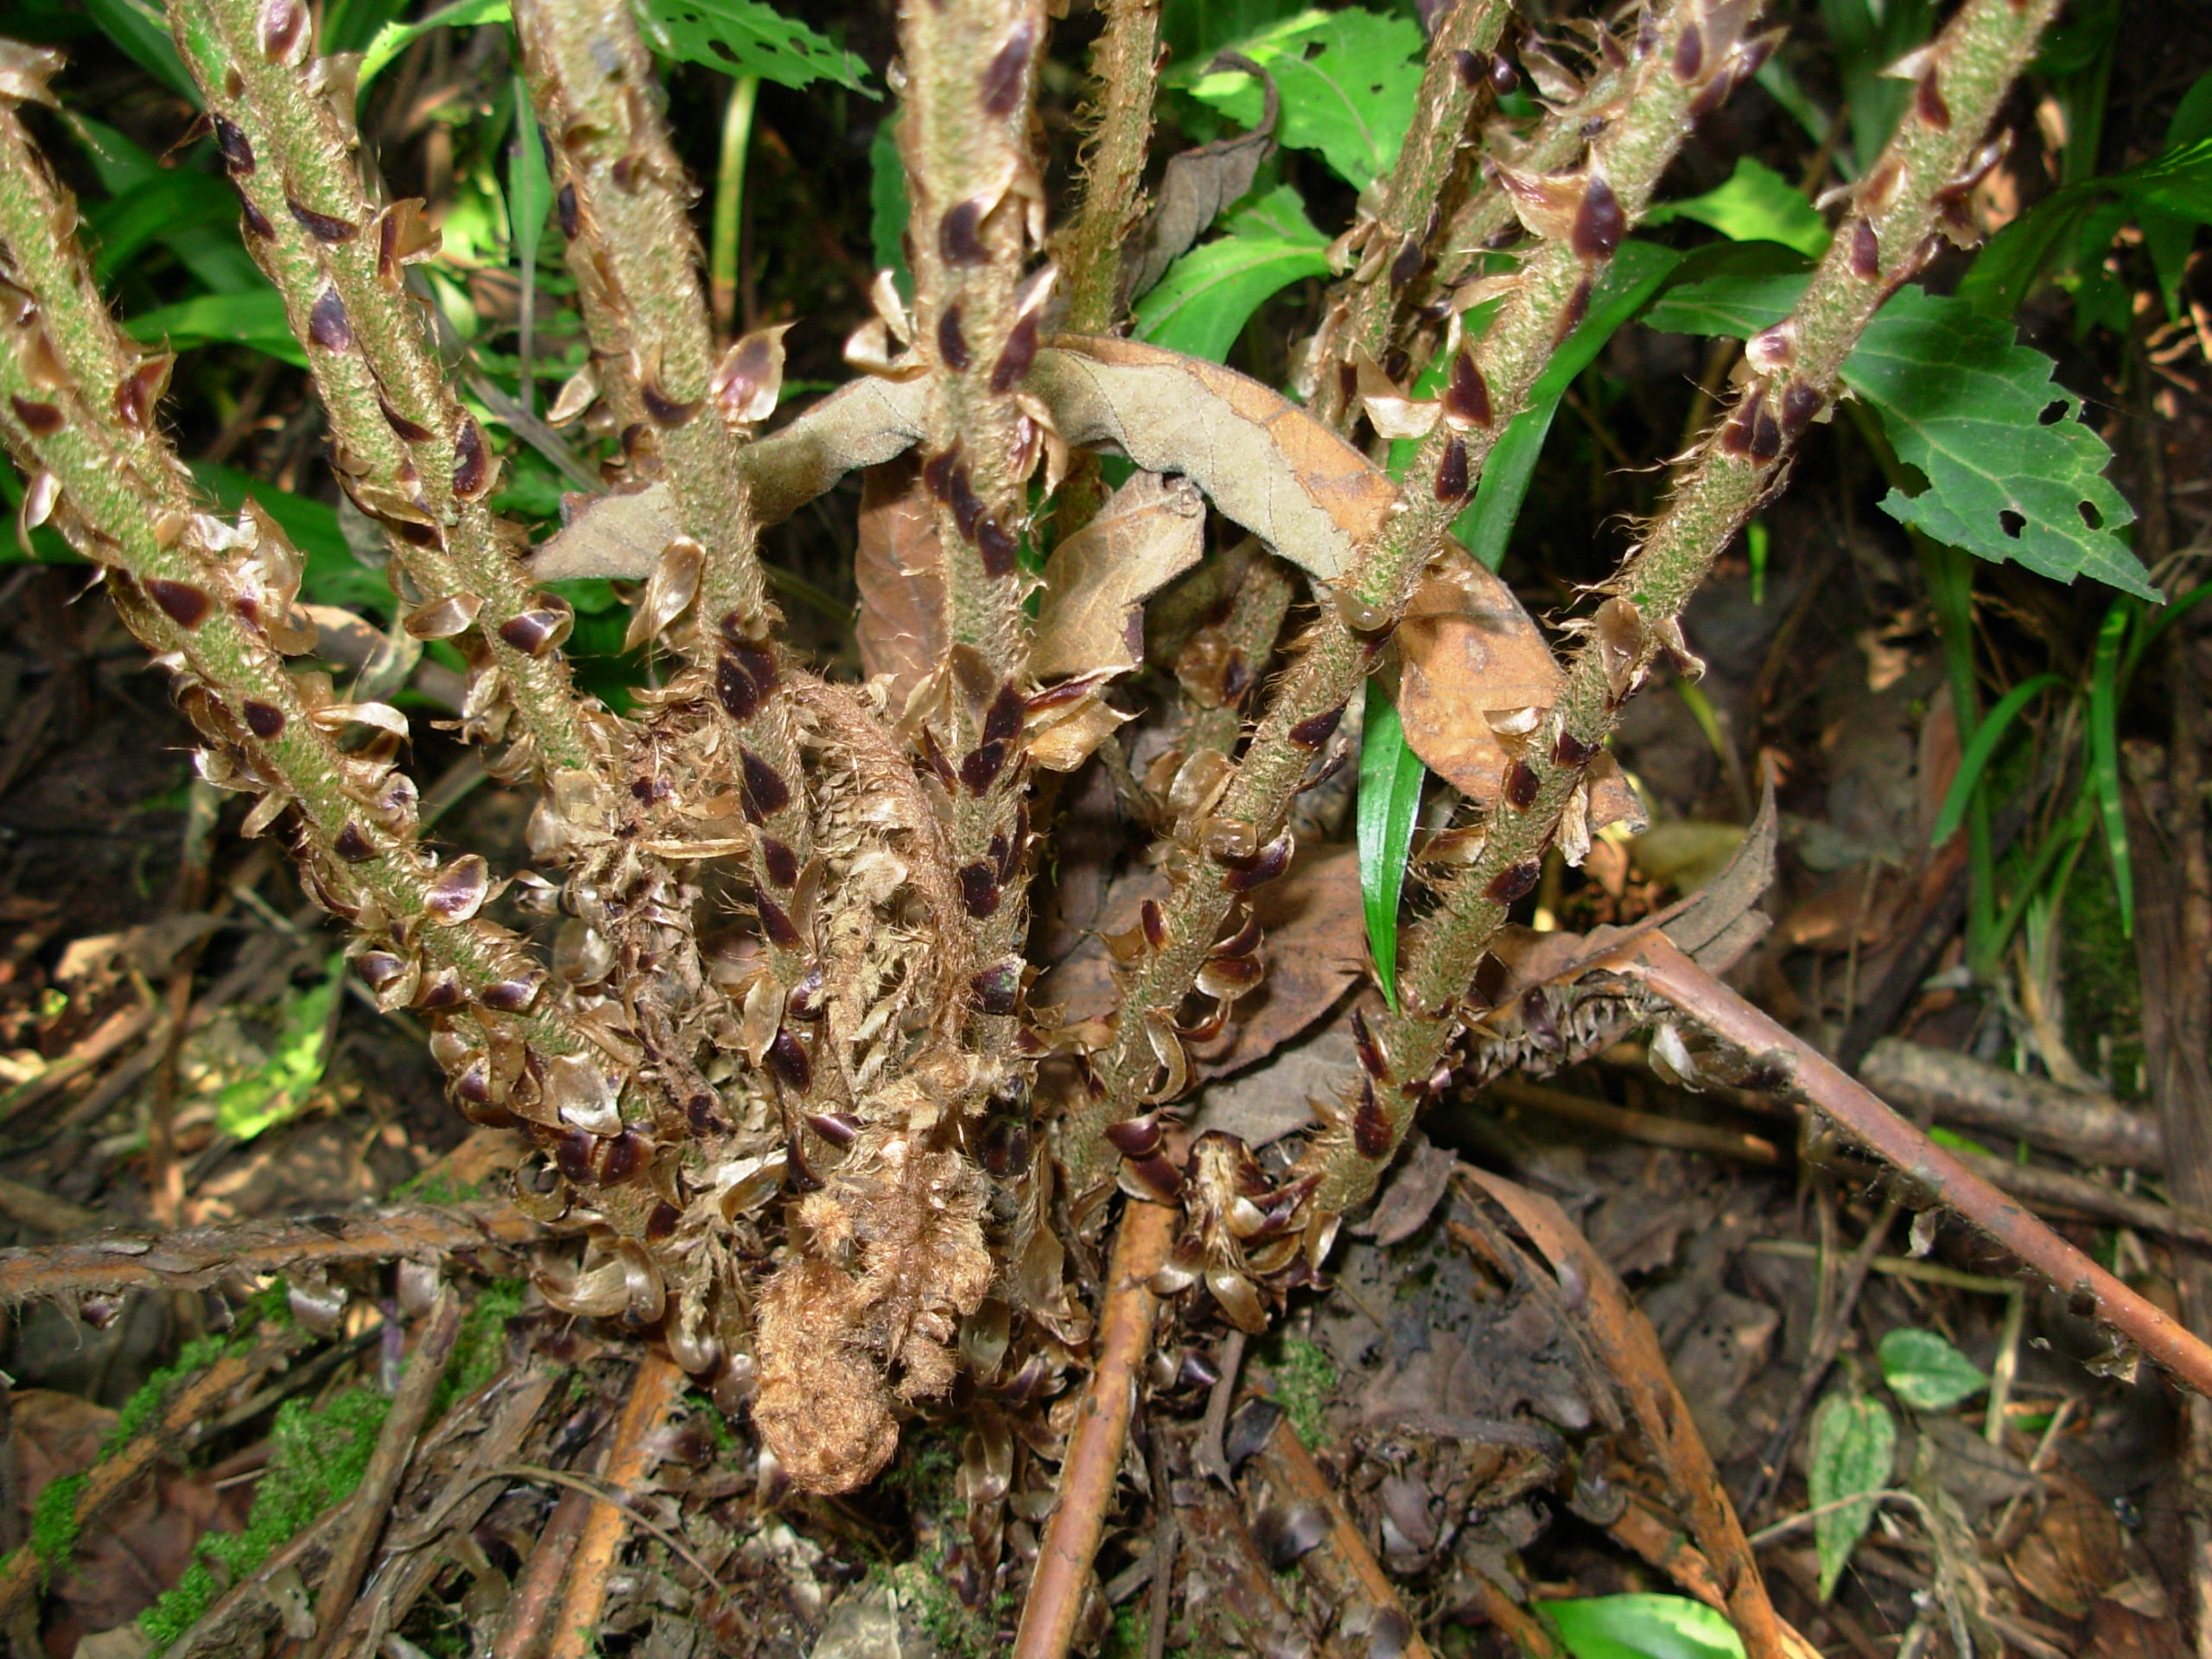 Polystichum piceopaleaceum